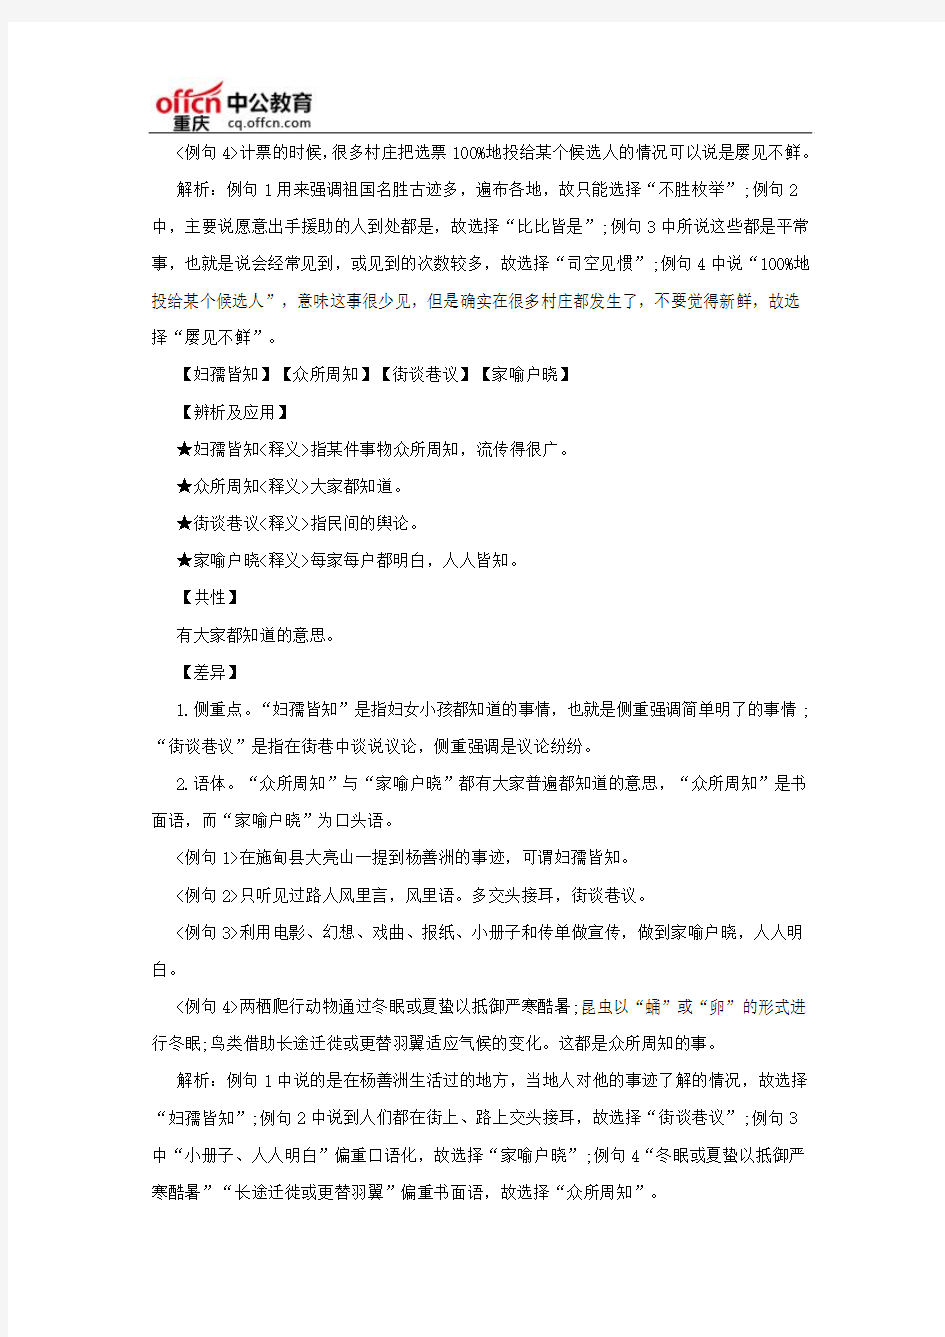 2018重庆选调生考试行测：成语储备表示“常见”的词语